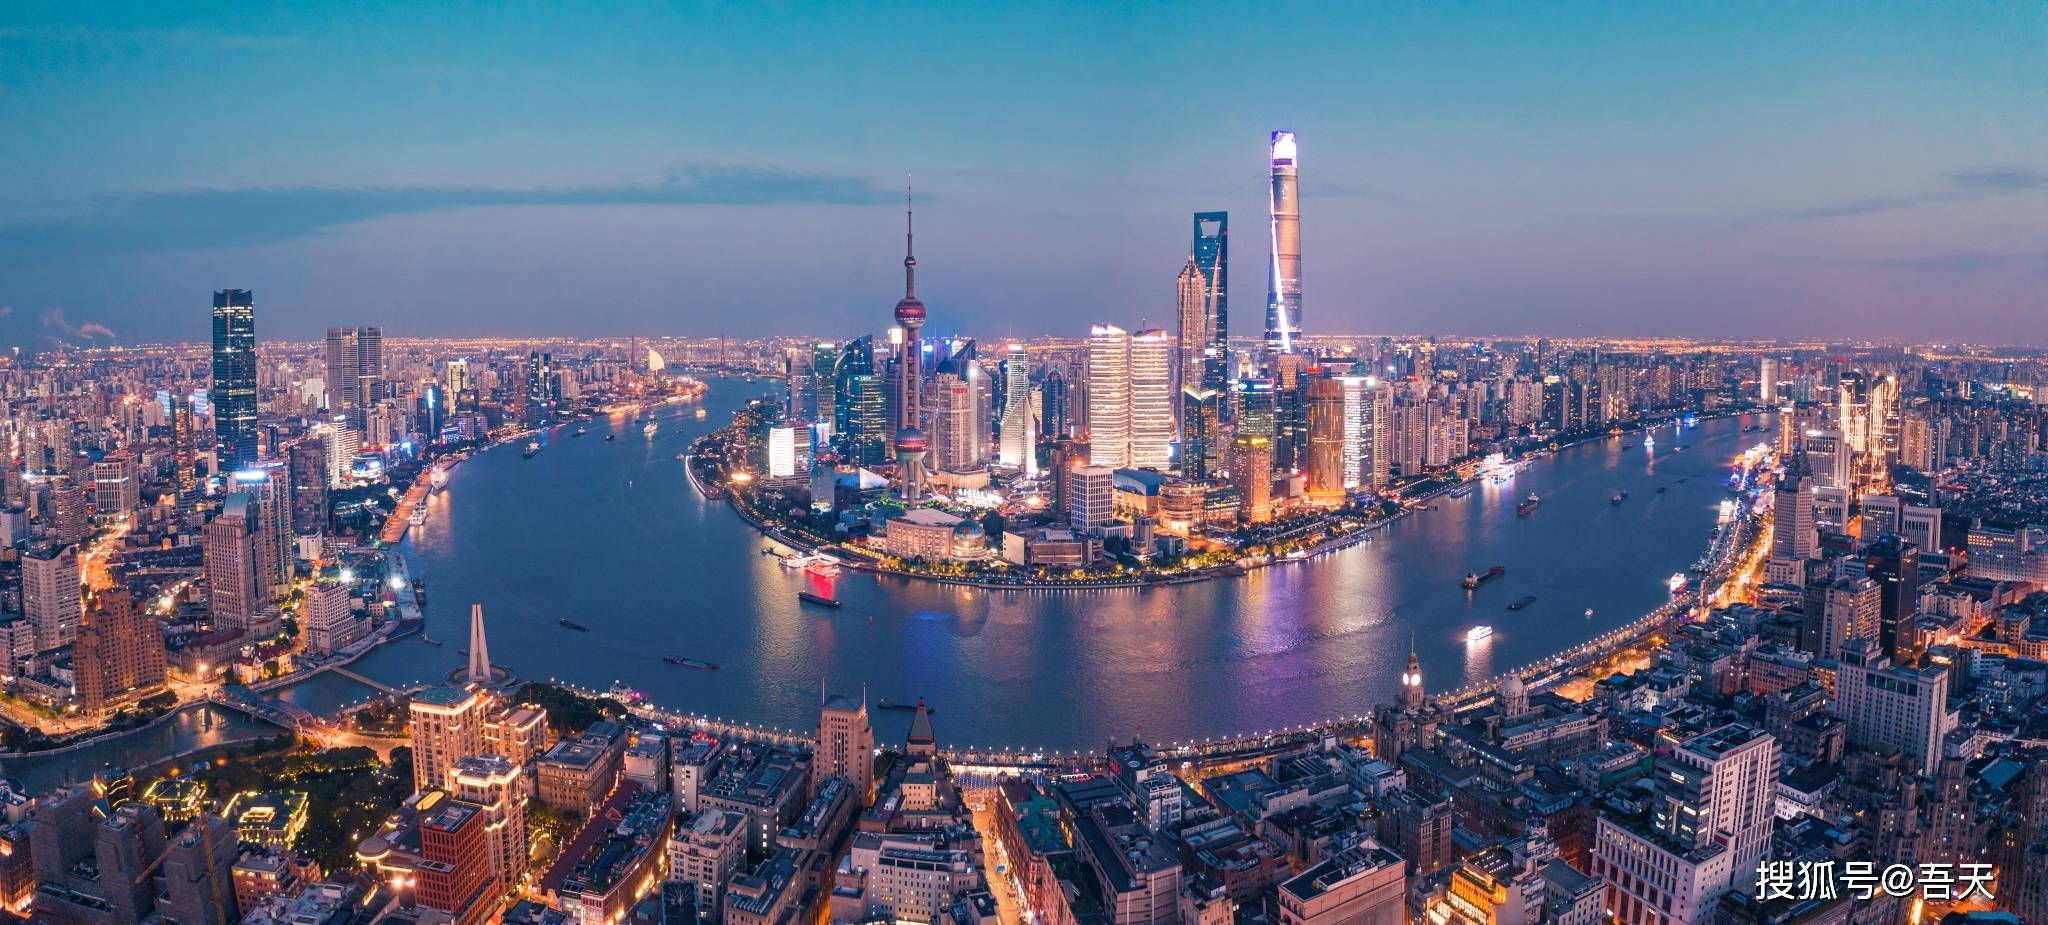 武汉都市圈和<strong>南京</strong>都市圈对比：除经济外，武汉都市圈有哪些潜力？